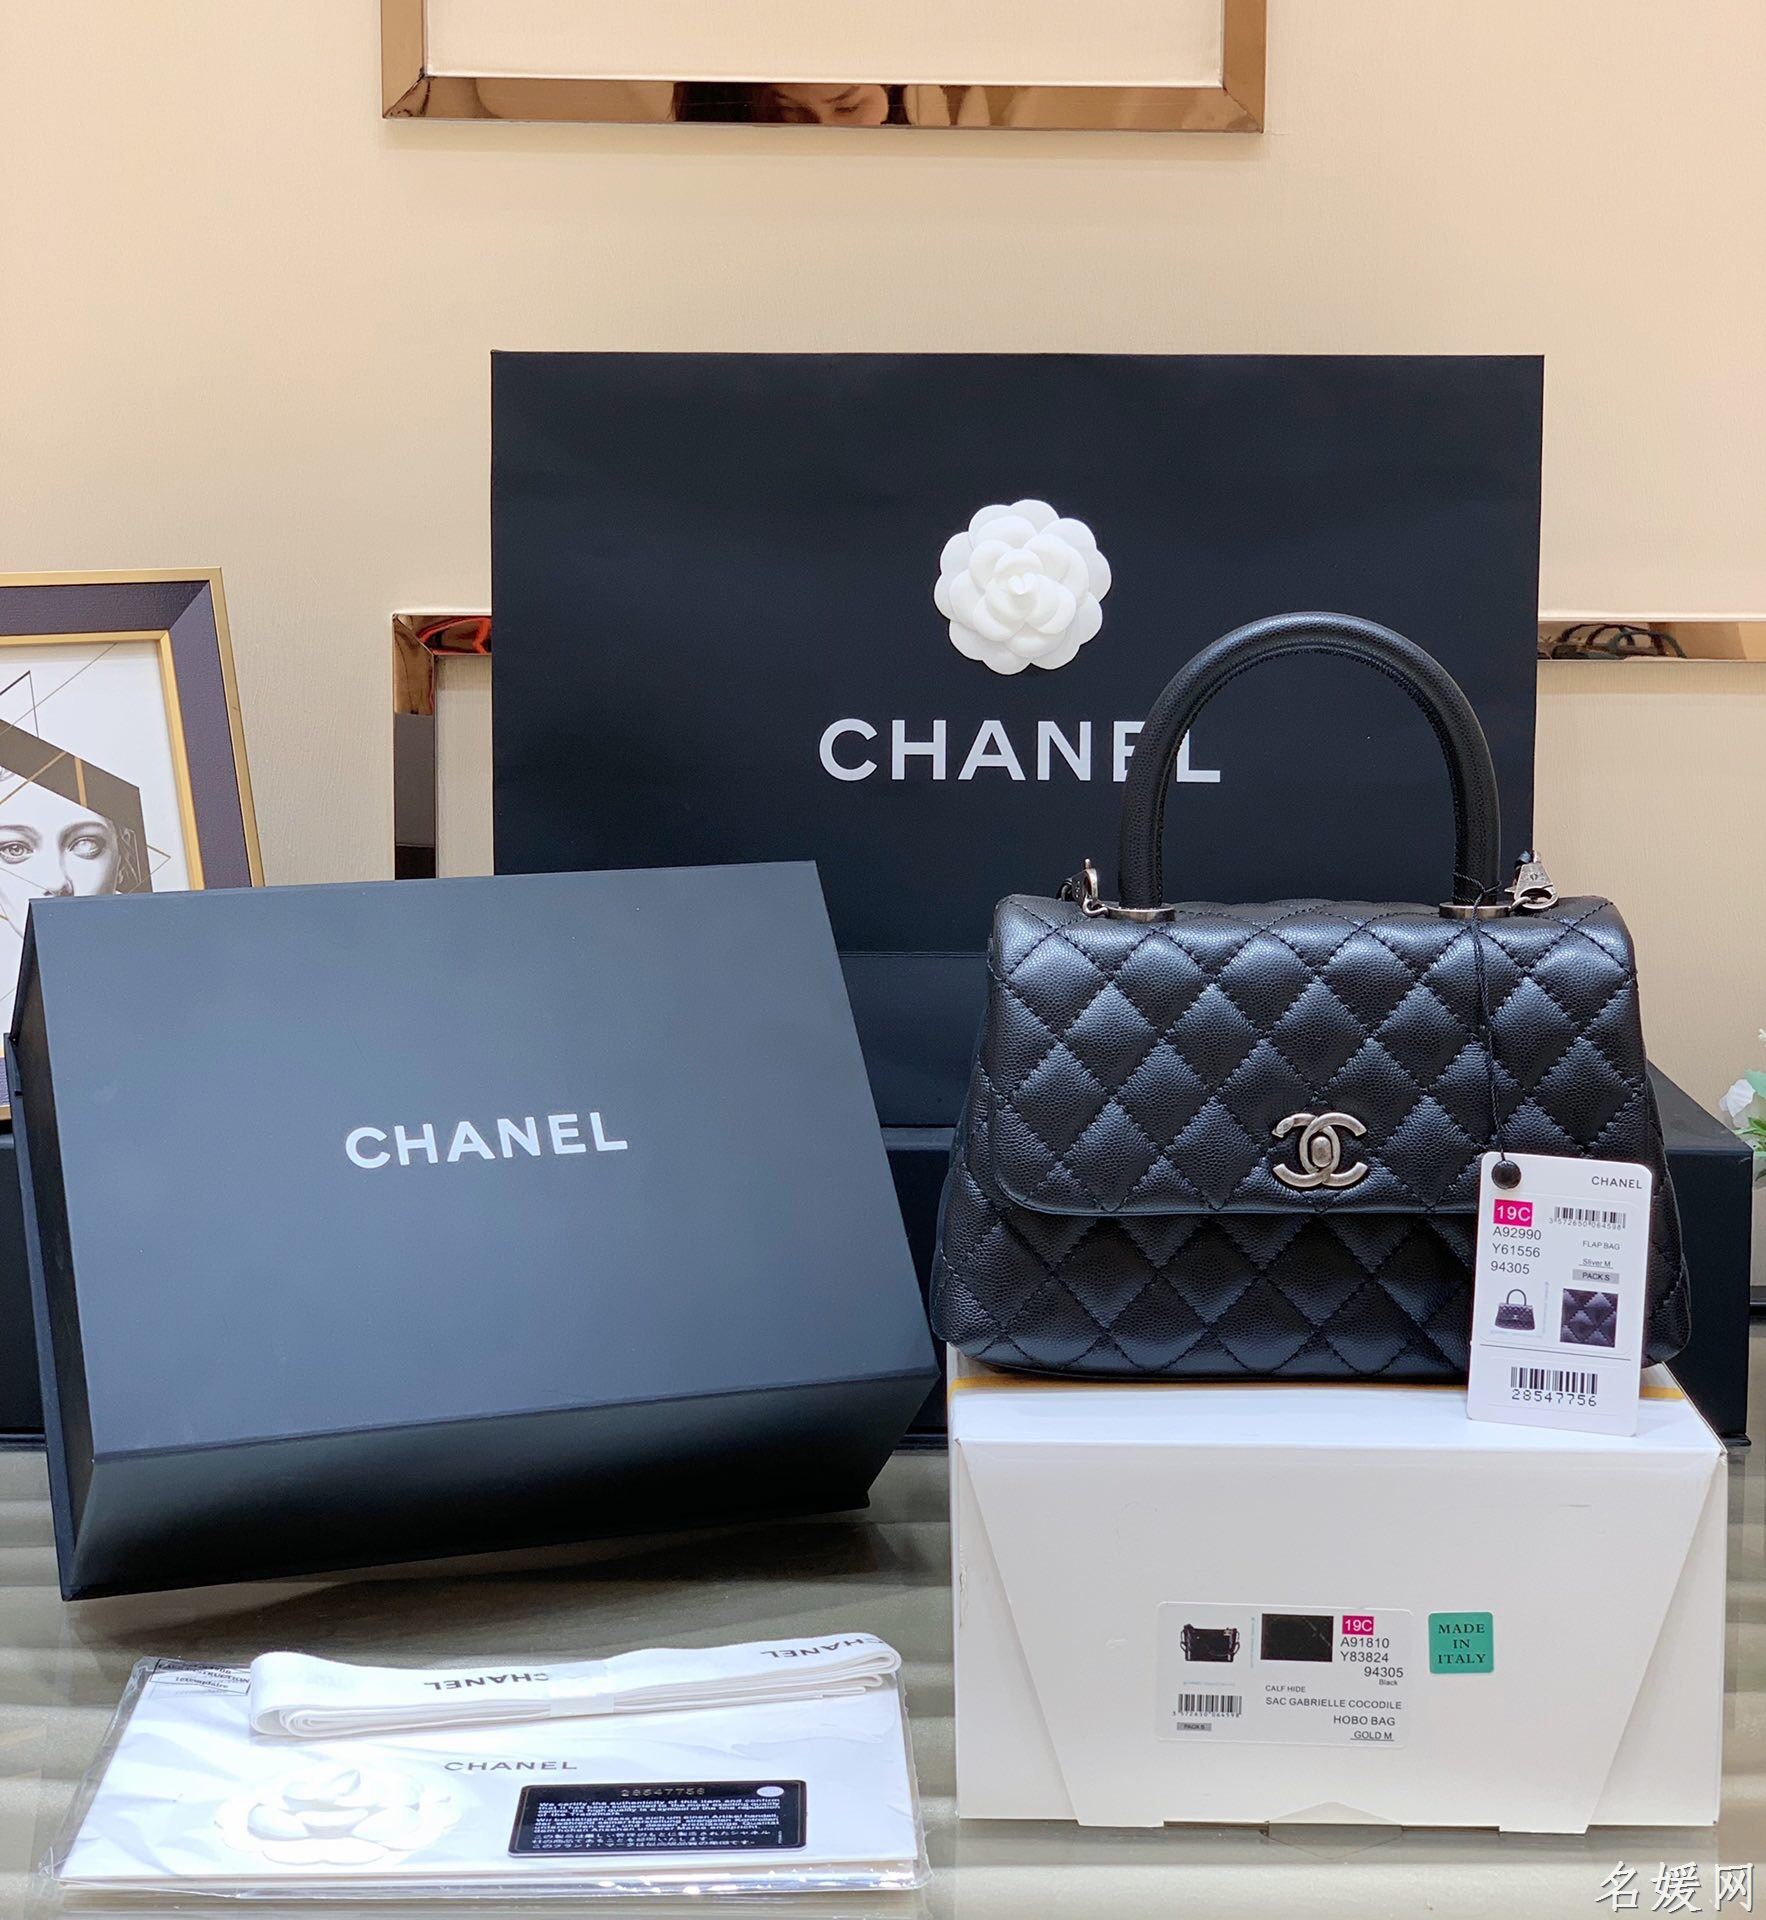 香奈儿女包 Chanel/香奈儿 Coco handle 小号手提包 A92990黑色 香奈儿手提包 